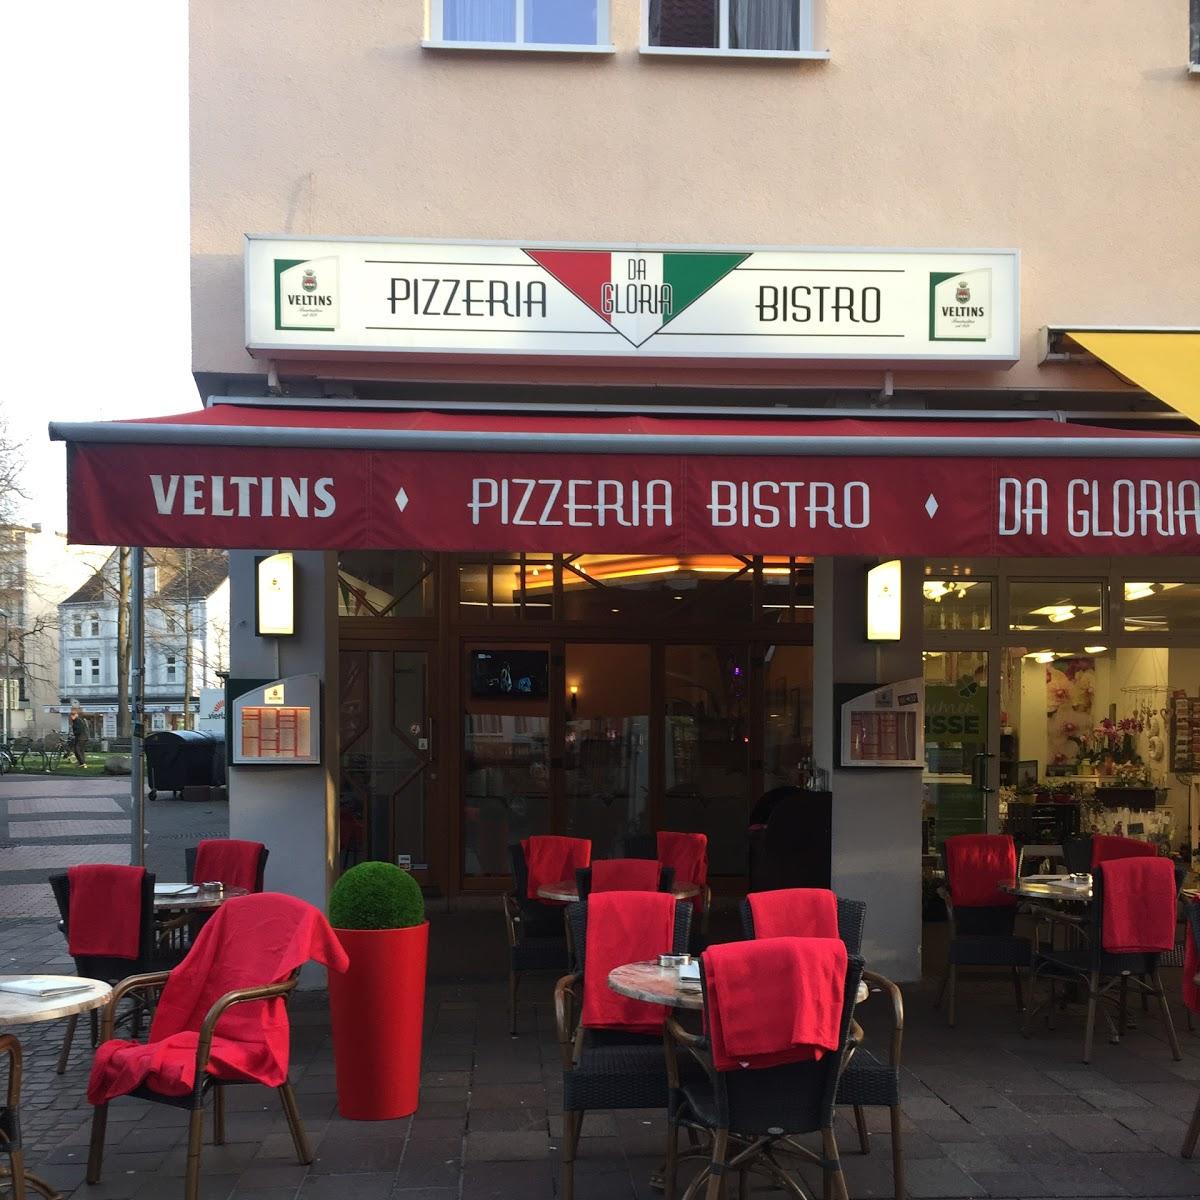 Restaurant "Pizzeria Da Gloria" in Paderborn